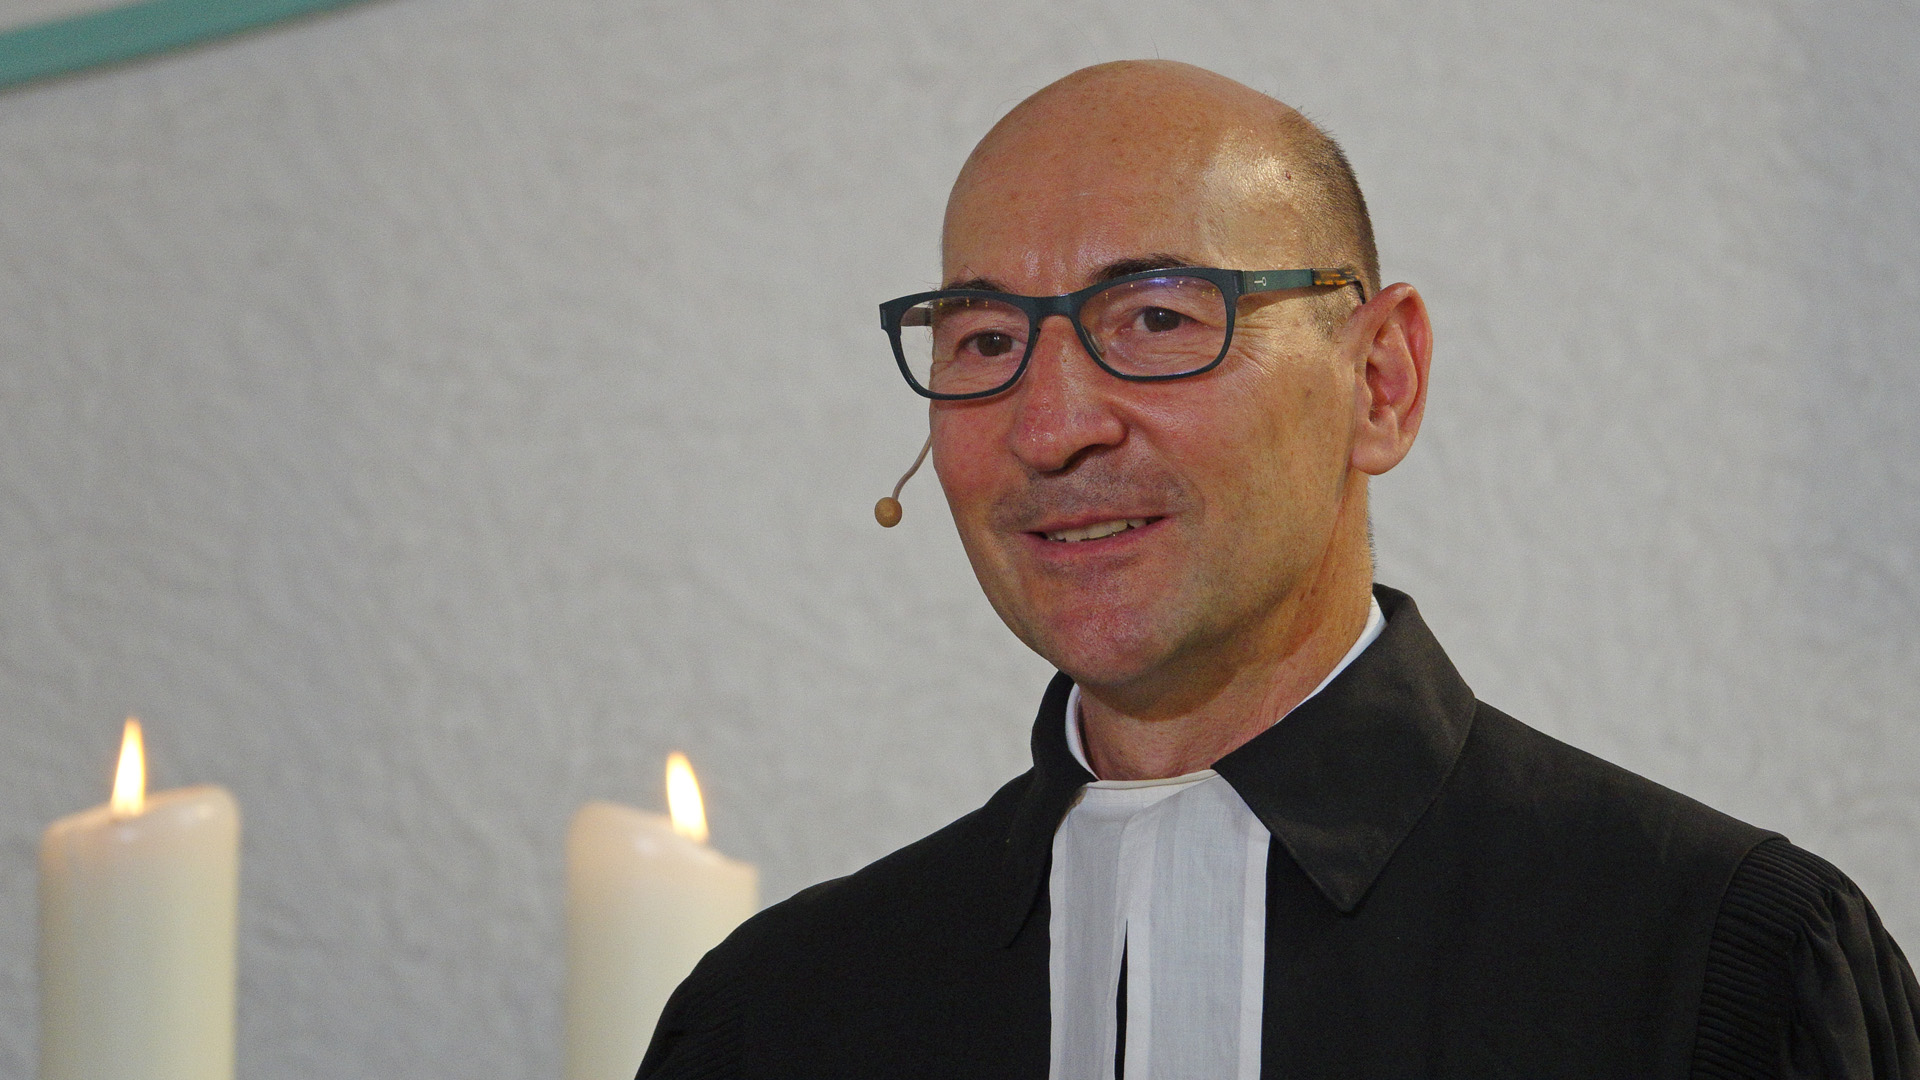 Rasmus Bertram hat eine halbe Pfarrstelle in der evangelischen Kirchengemeinde Kriftel. Mit der anderen halben Stelle entwickelt er Internetgottesdienste.